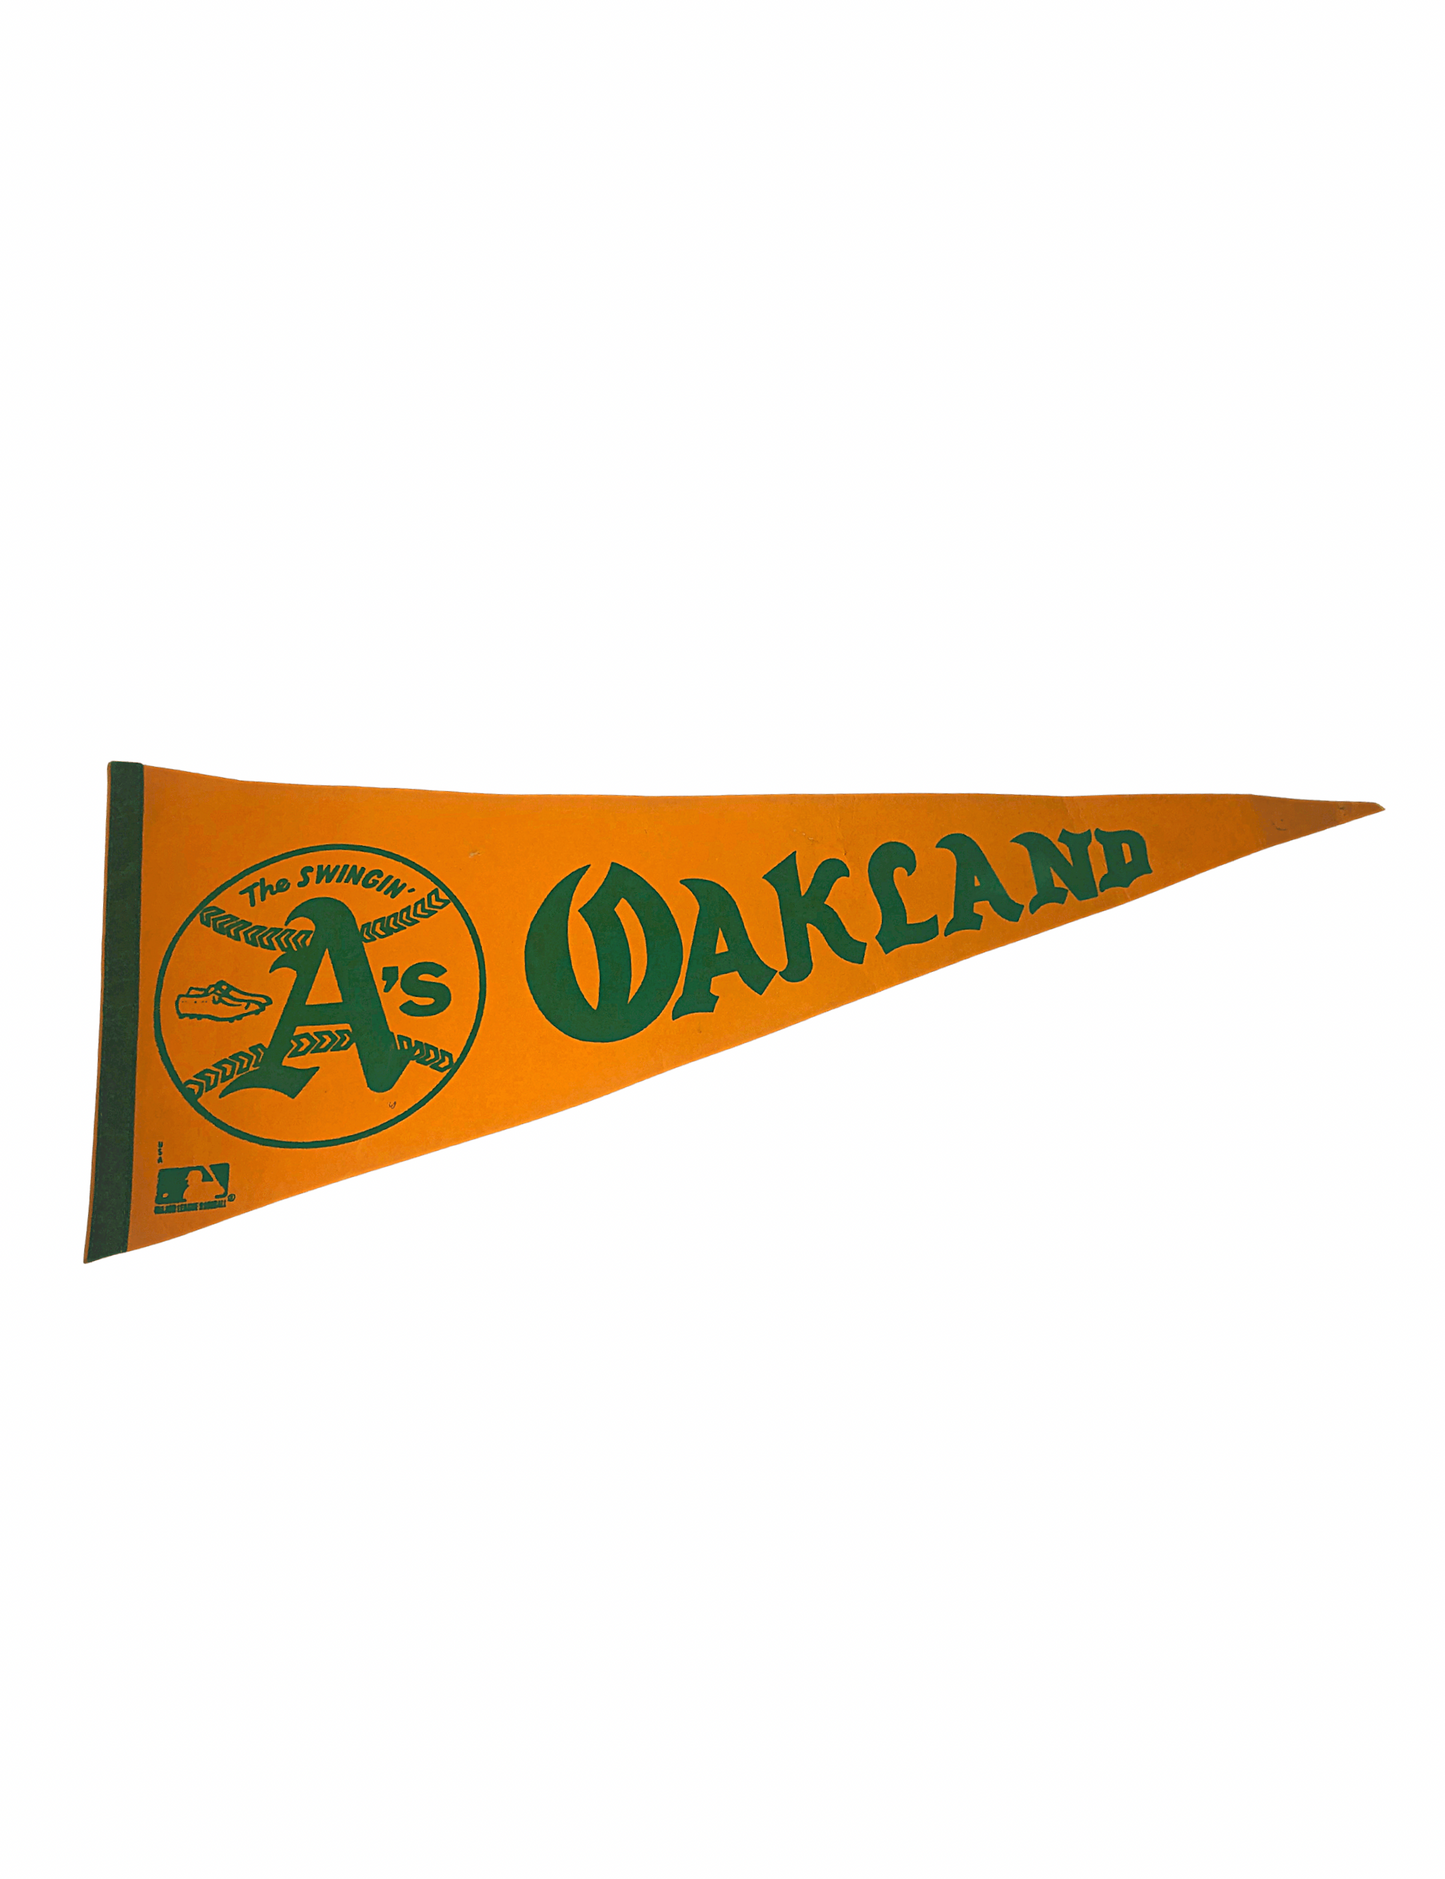 1970’s Oakland A’s Baseball Felt Pennant 30” x 12”